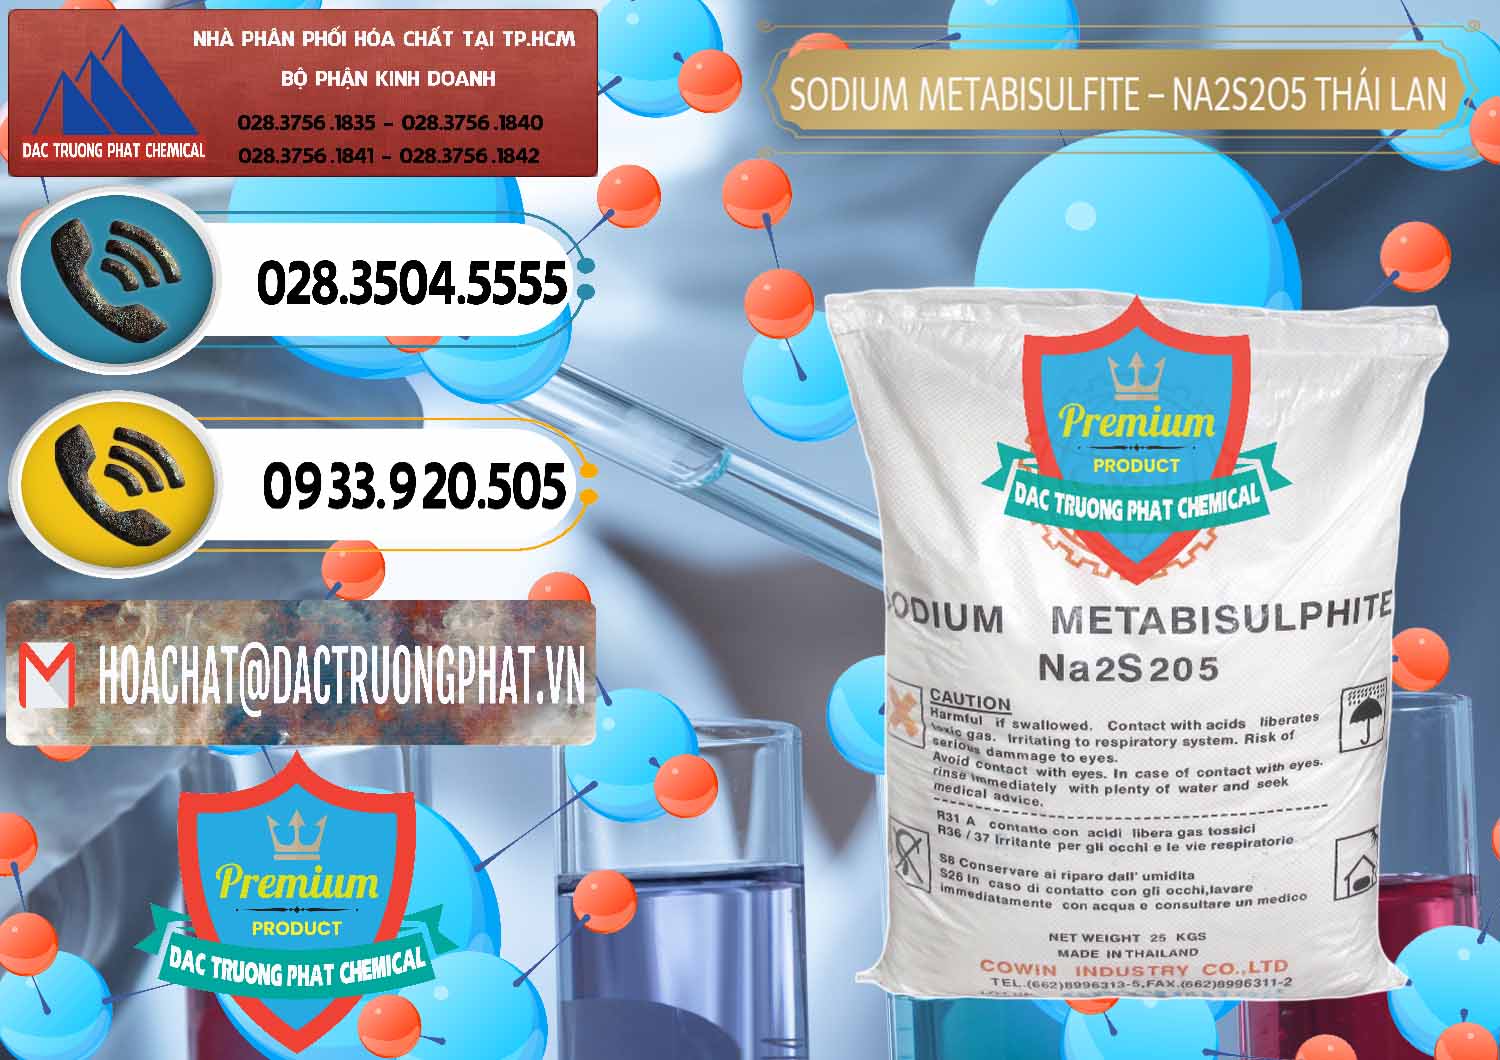 Đơn vị chuyên bán & cung cấp Sodium Metabisulfite - NA2S2O5 Thái Lan Cowin - 0145 - Chuyên phân phối ( cung cấp ) hóa chất tại TP.HCM - hoachatdetnhuom.vn